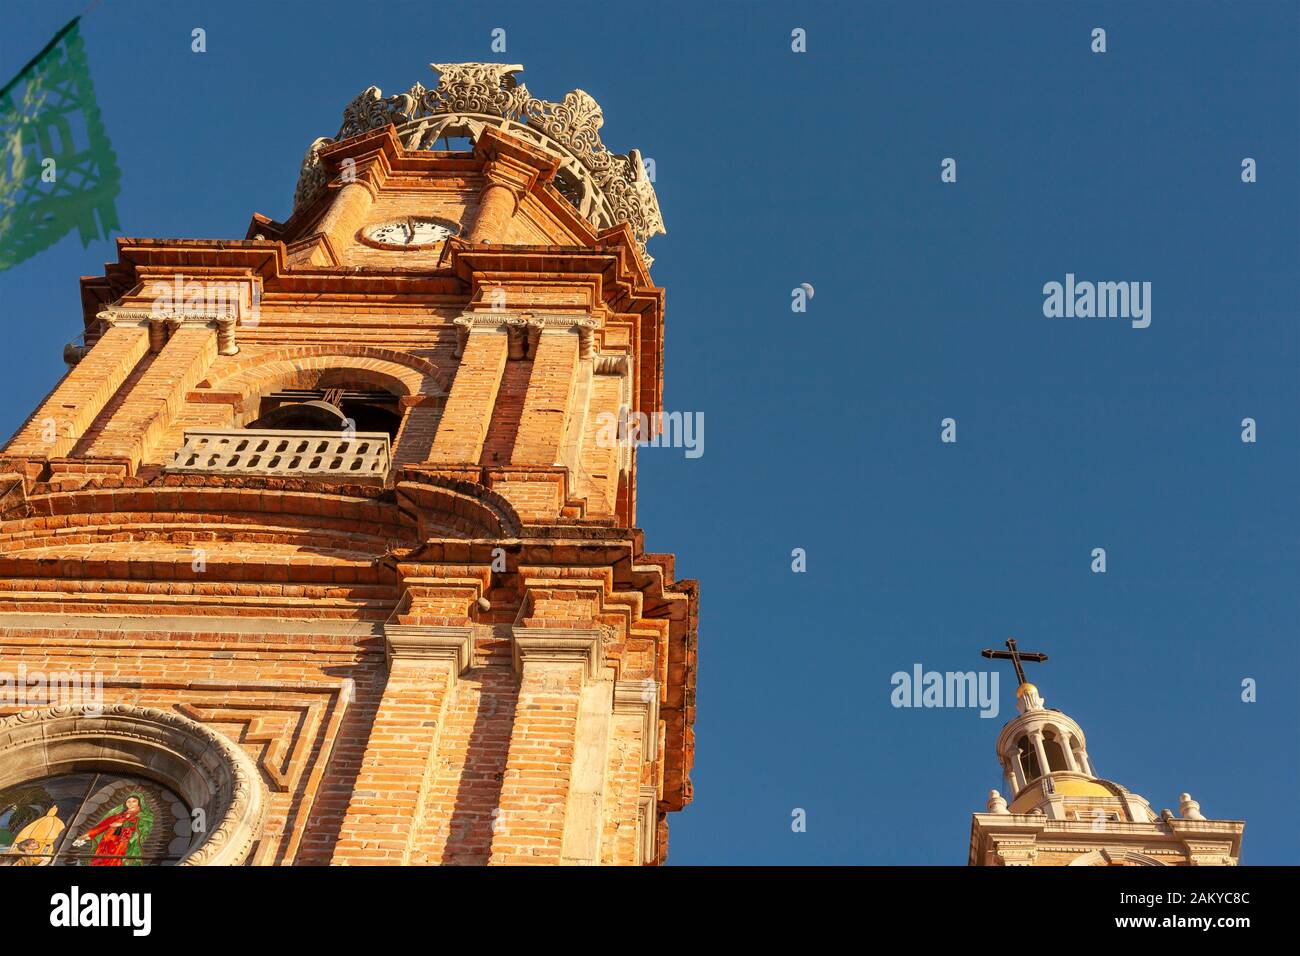 La Iglesia de Nuestra Senora de Guadalupe, Church of Our Lady of Guadalupe, Puerto Vallarta, Jalisco, Mexico. Stock Photo